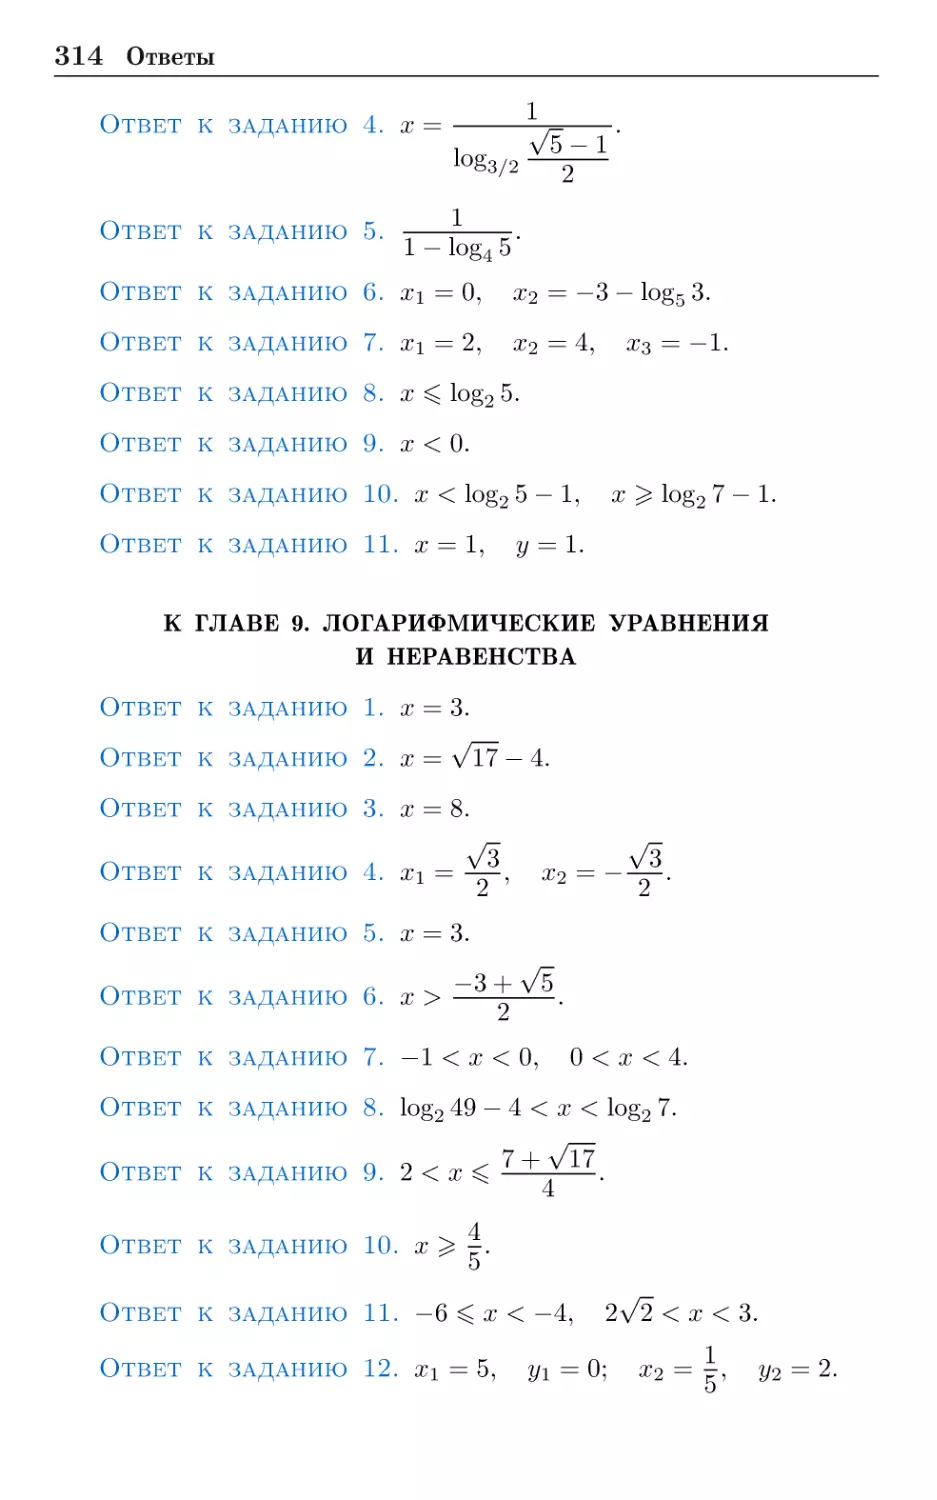 К главе 9. Логарифмические уравнения и неравенства